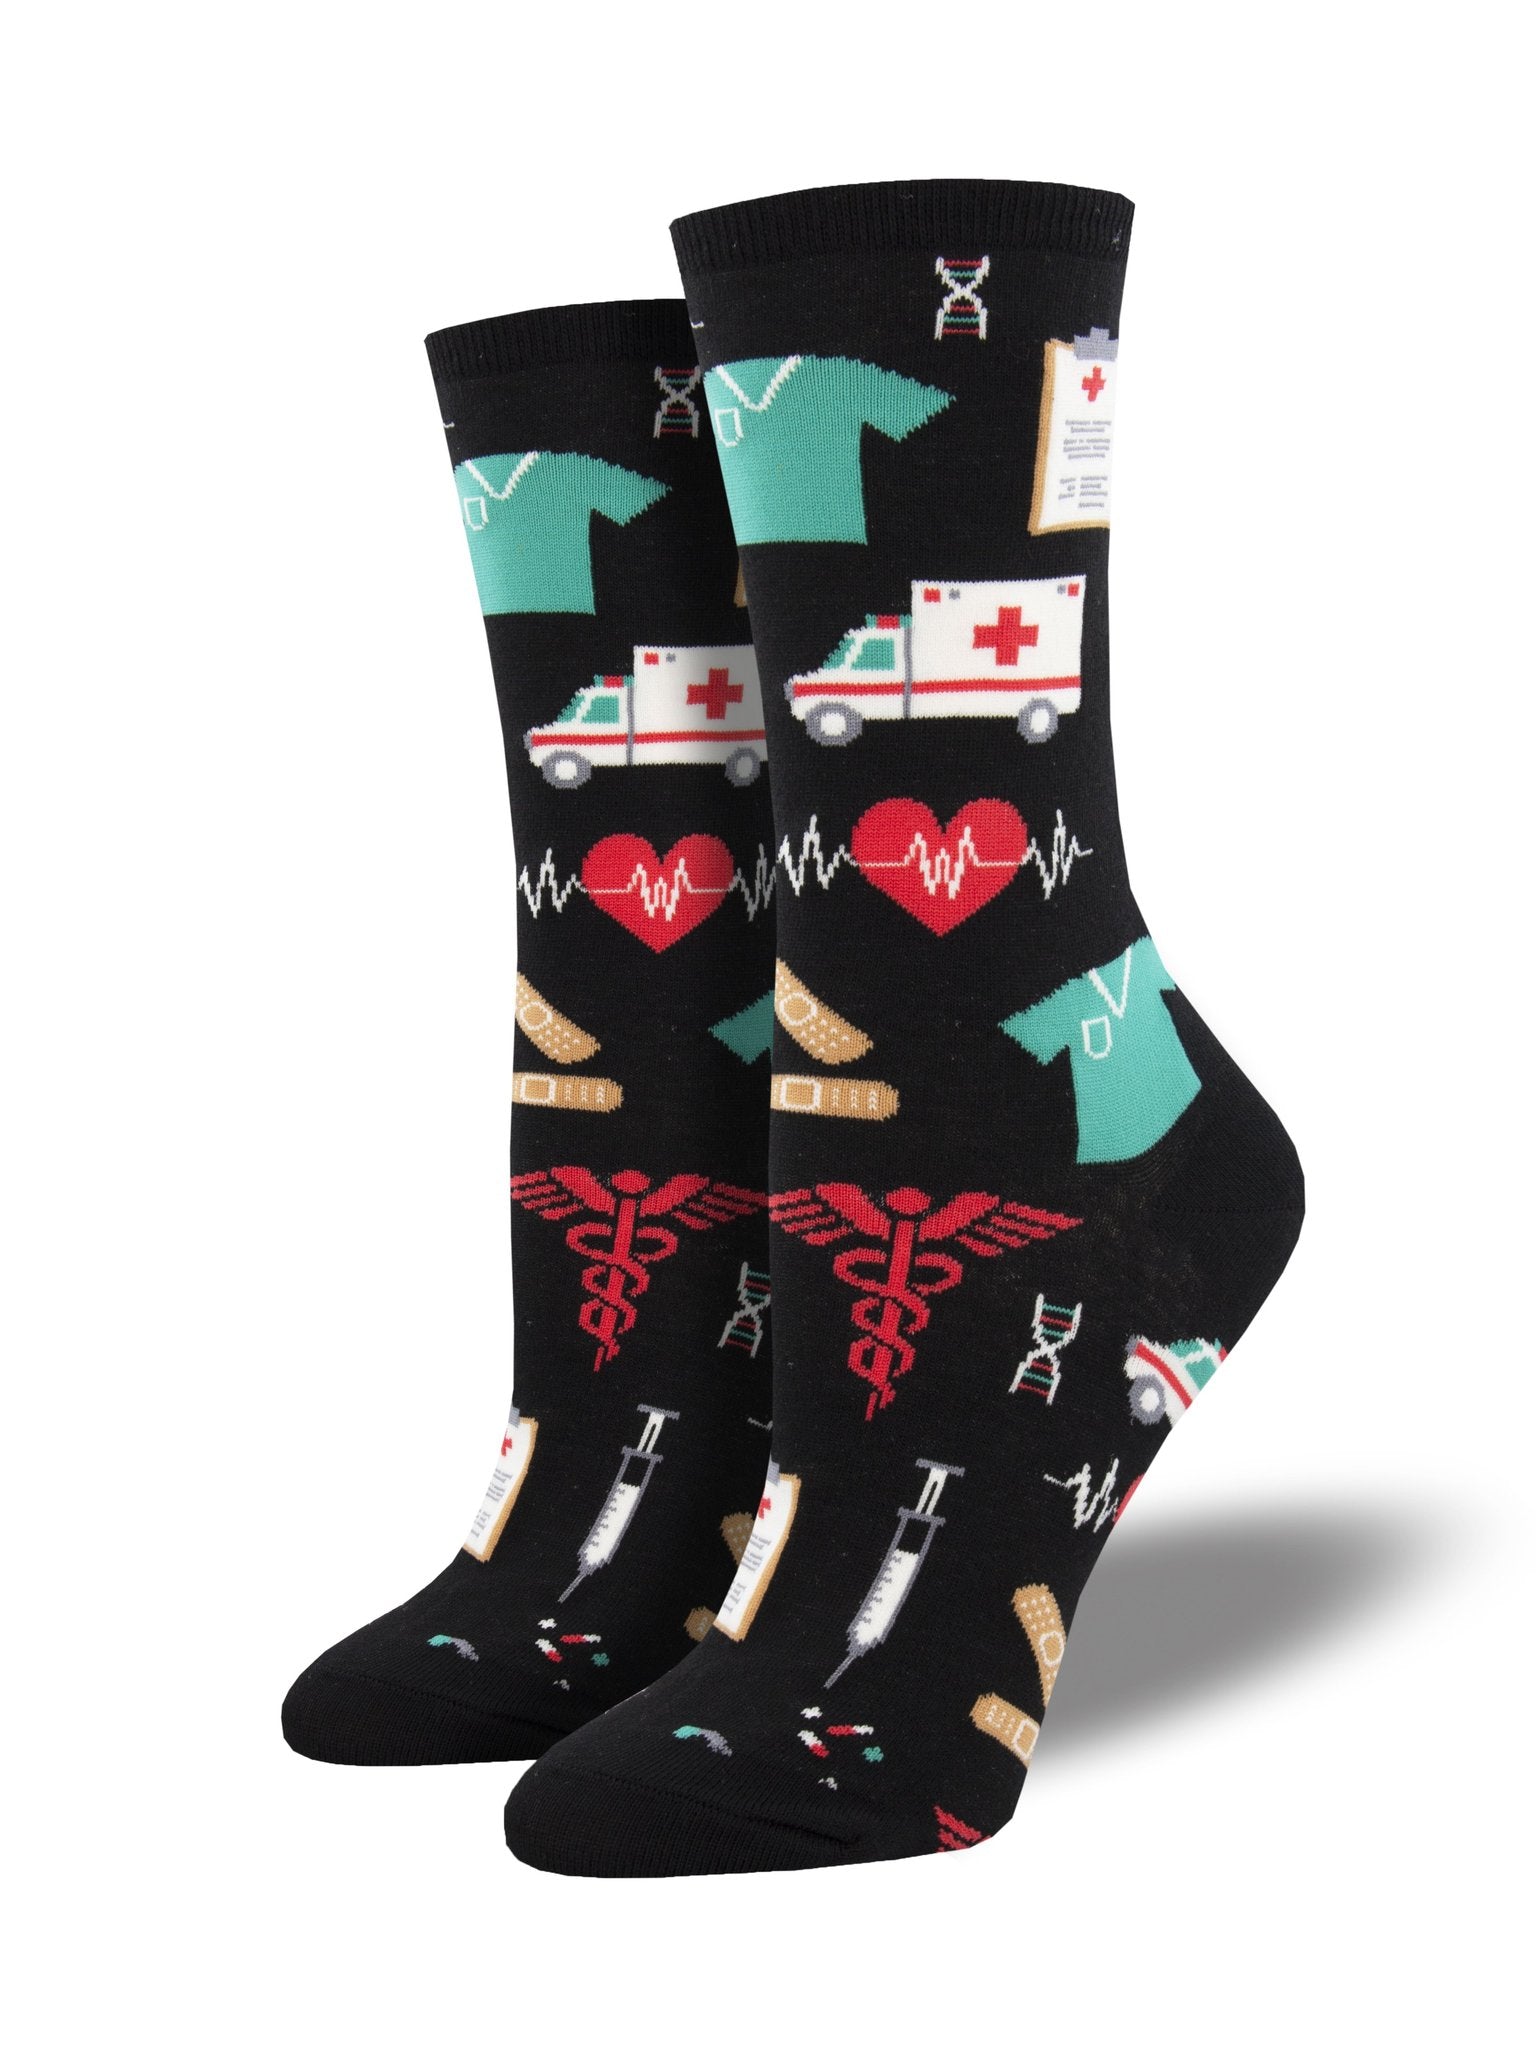 Healthcare Heros Women's Socks